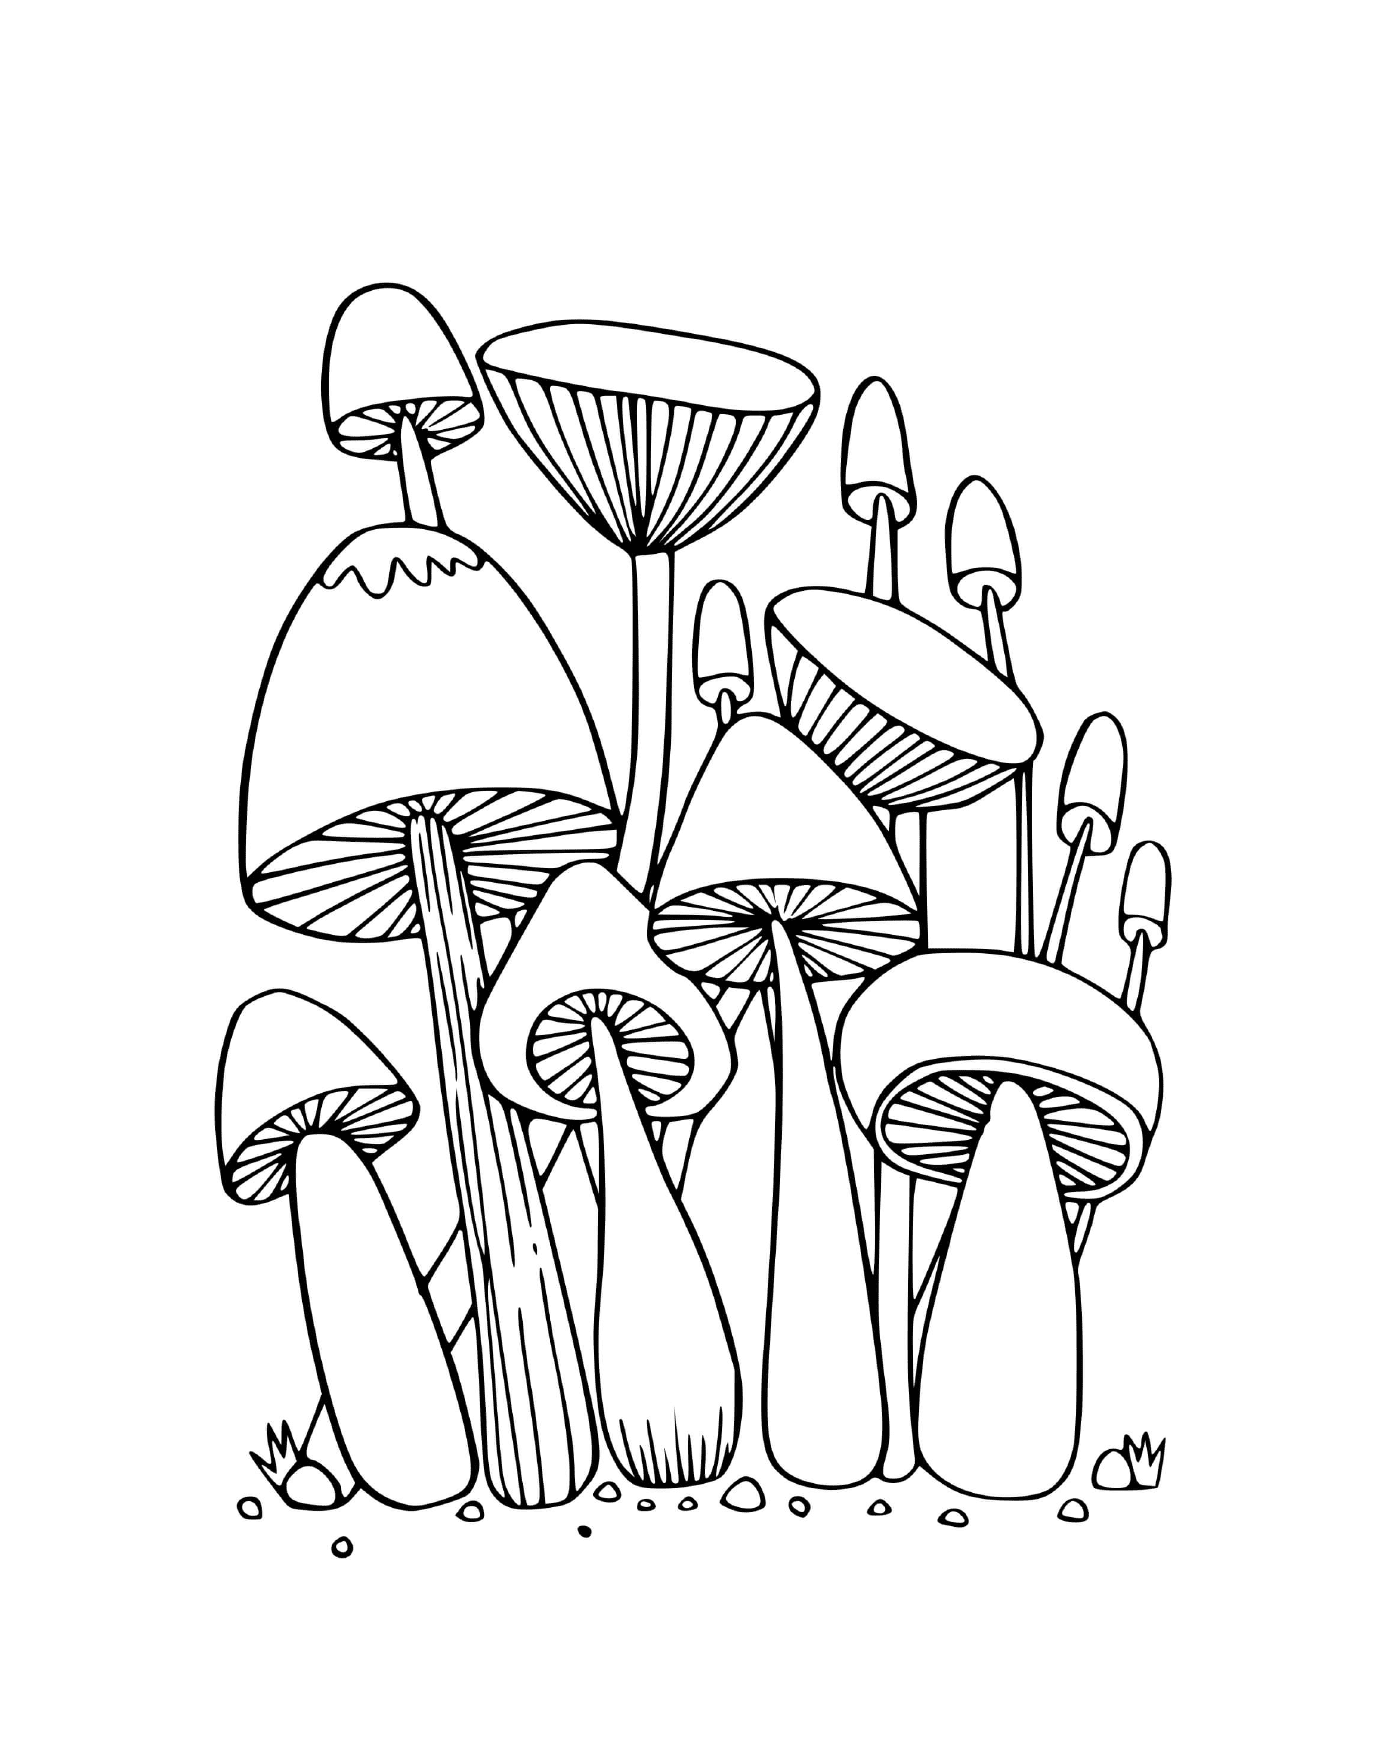  Setas del bosque sentadas en la hierba 